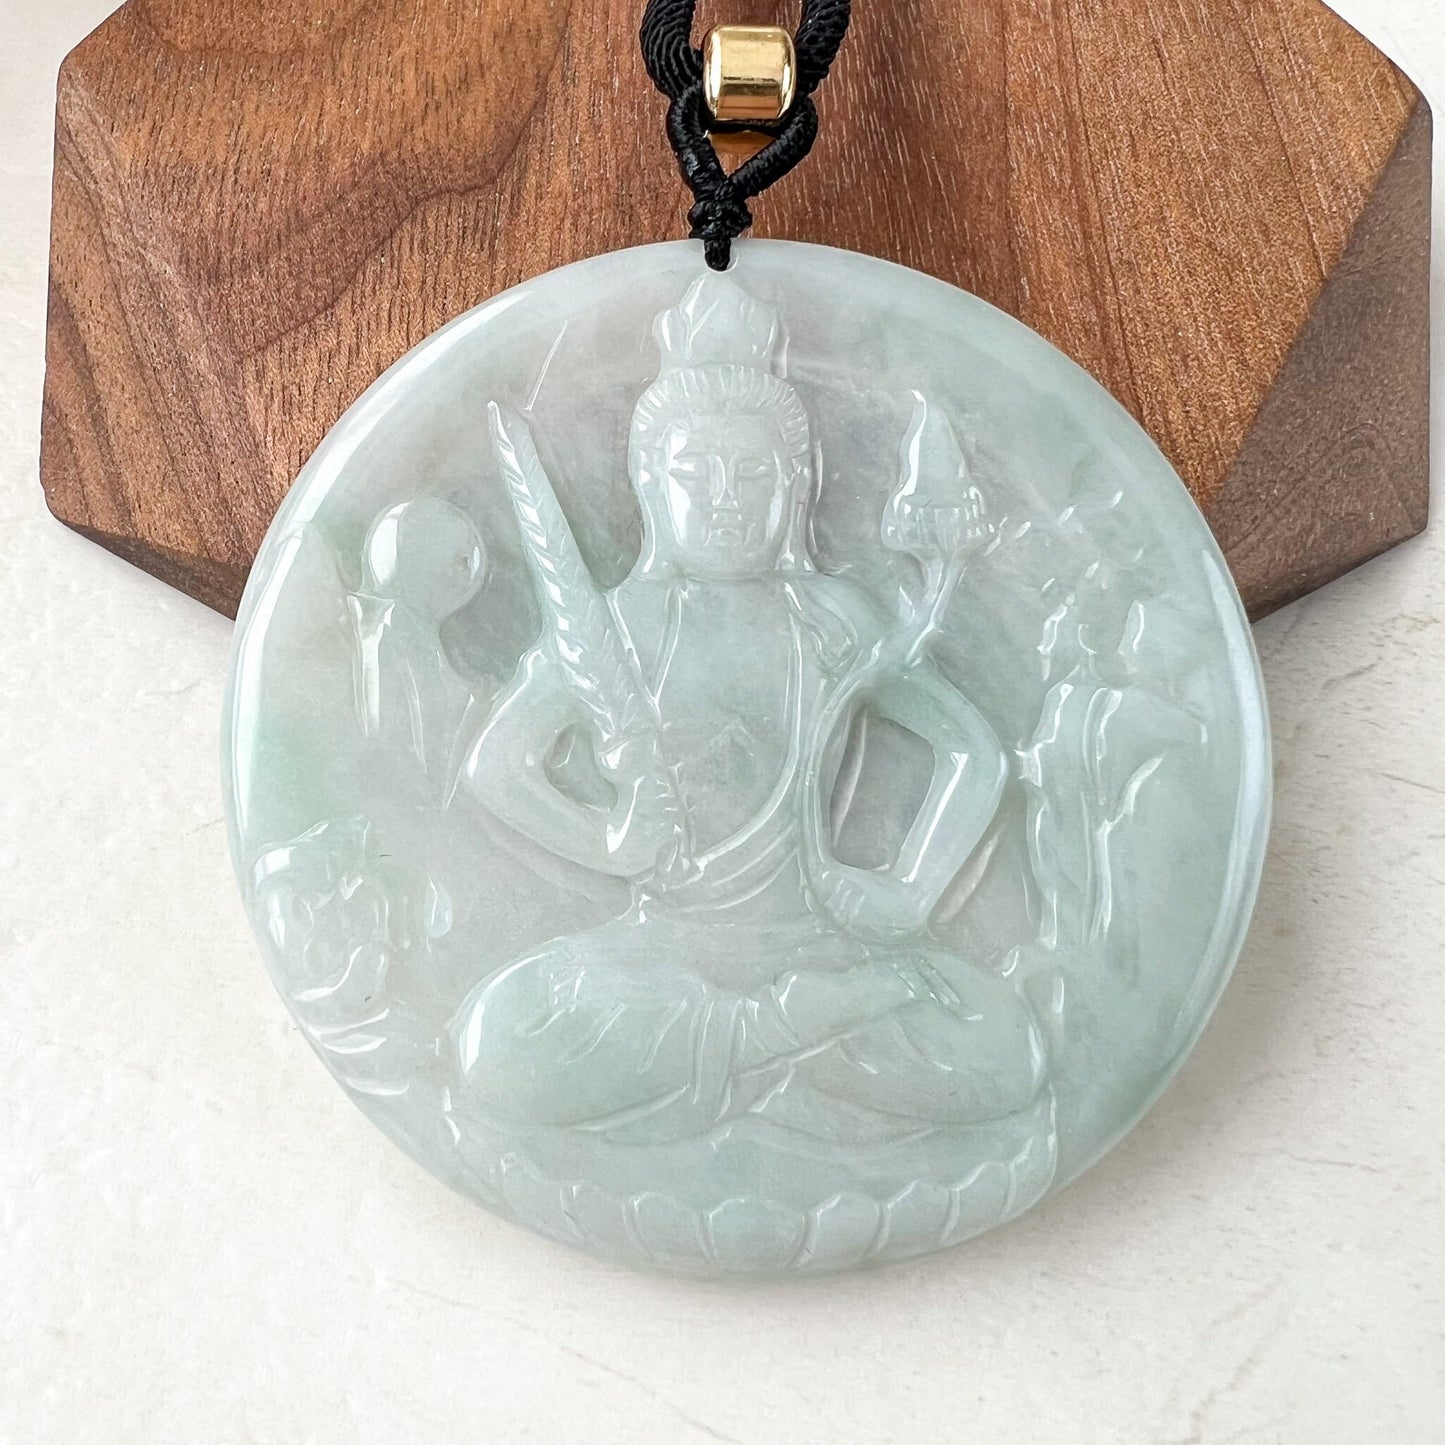 Jadeite Jade Akasagarbha Buddha, Xu Kong Zang, bodhisattva, Hư Không Tạng Bồ Tát, 虚空藏菩萨, Hand Carved Pendant Necklace, YJ-0522-0424652